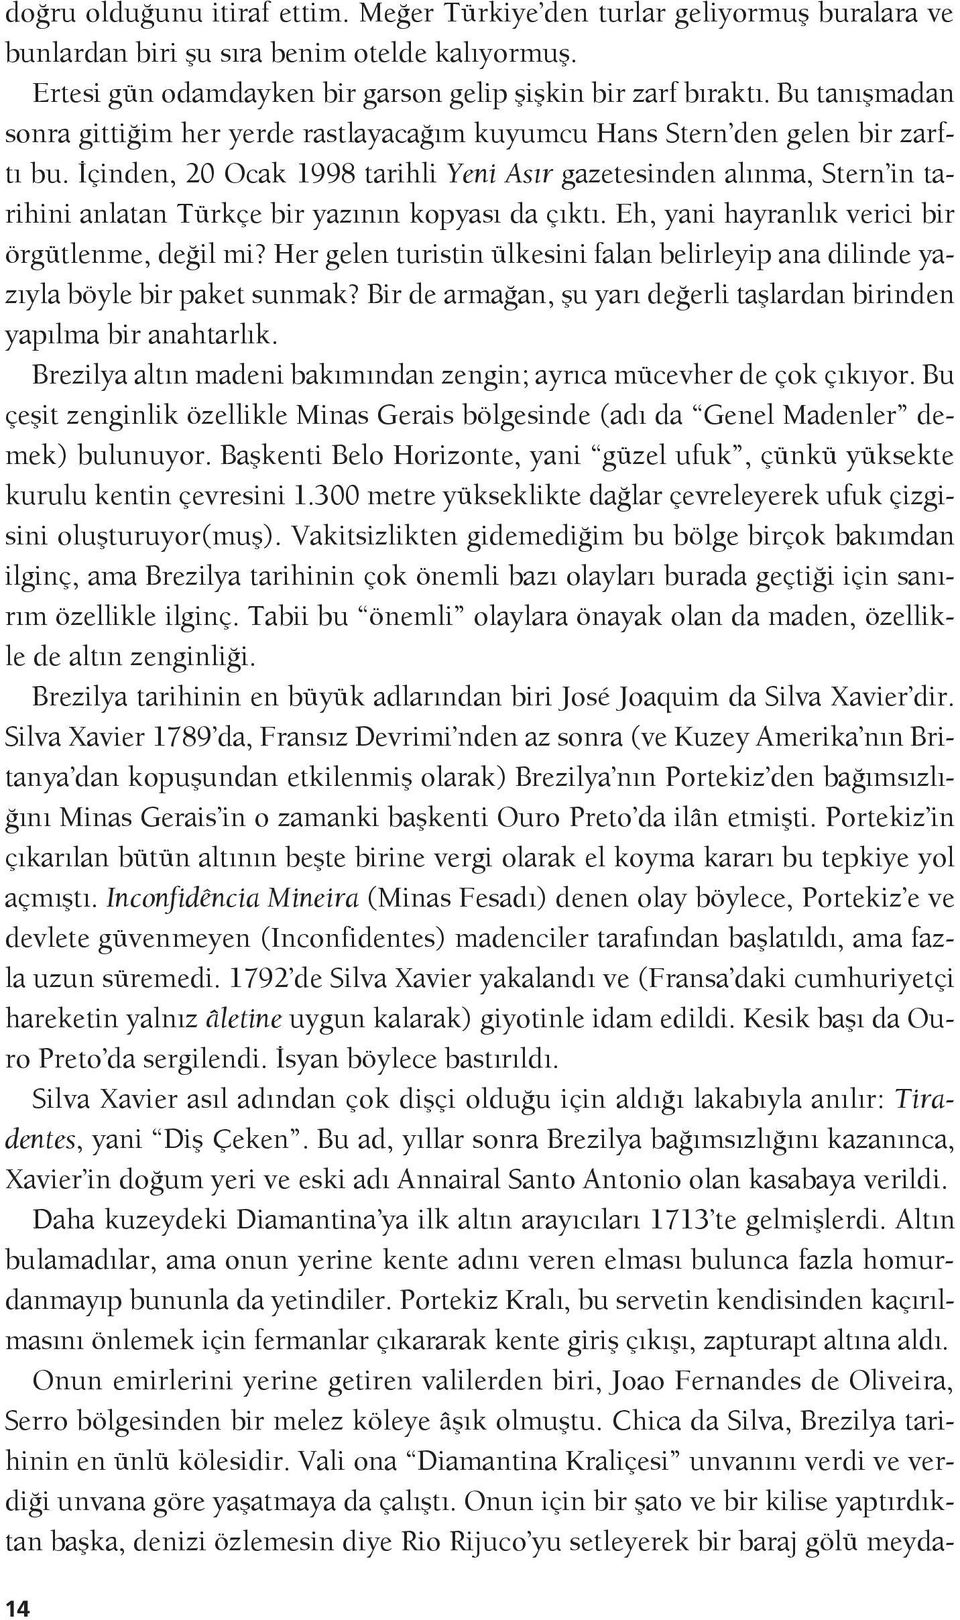 İçinden, 20 Ocak 1998 tarihli Yeni Asır gazetesinden alınma, Stern in tarihini anlatan Türkçe bir yazının kopyası da çıktı. Eh, yani hayranlık verici bir örgütlenme, değil mi?